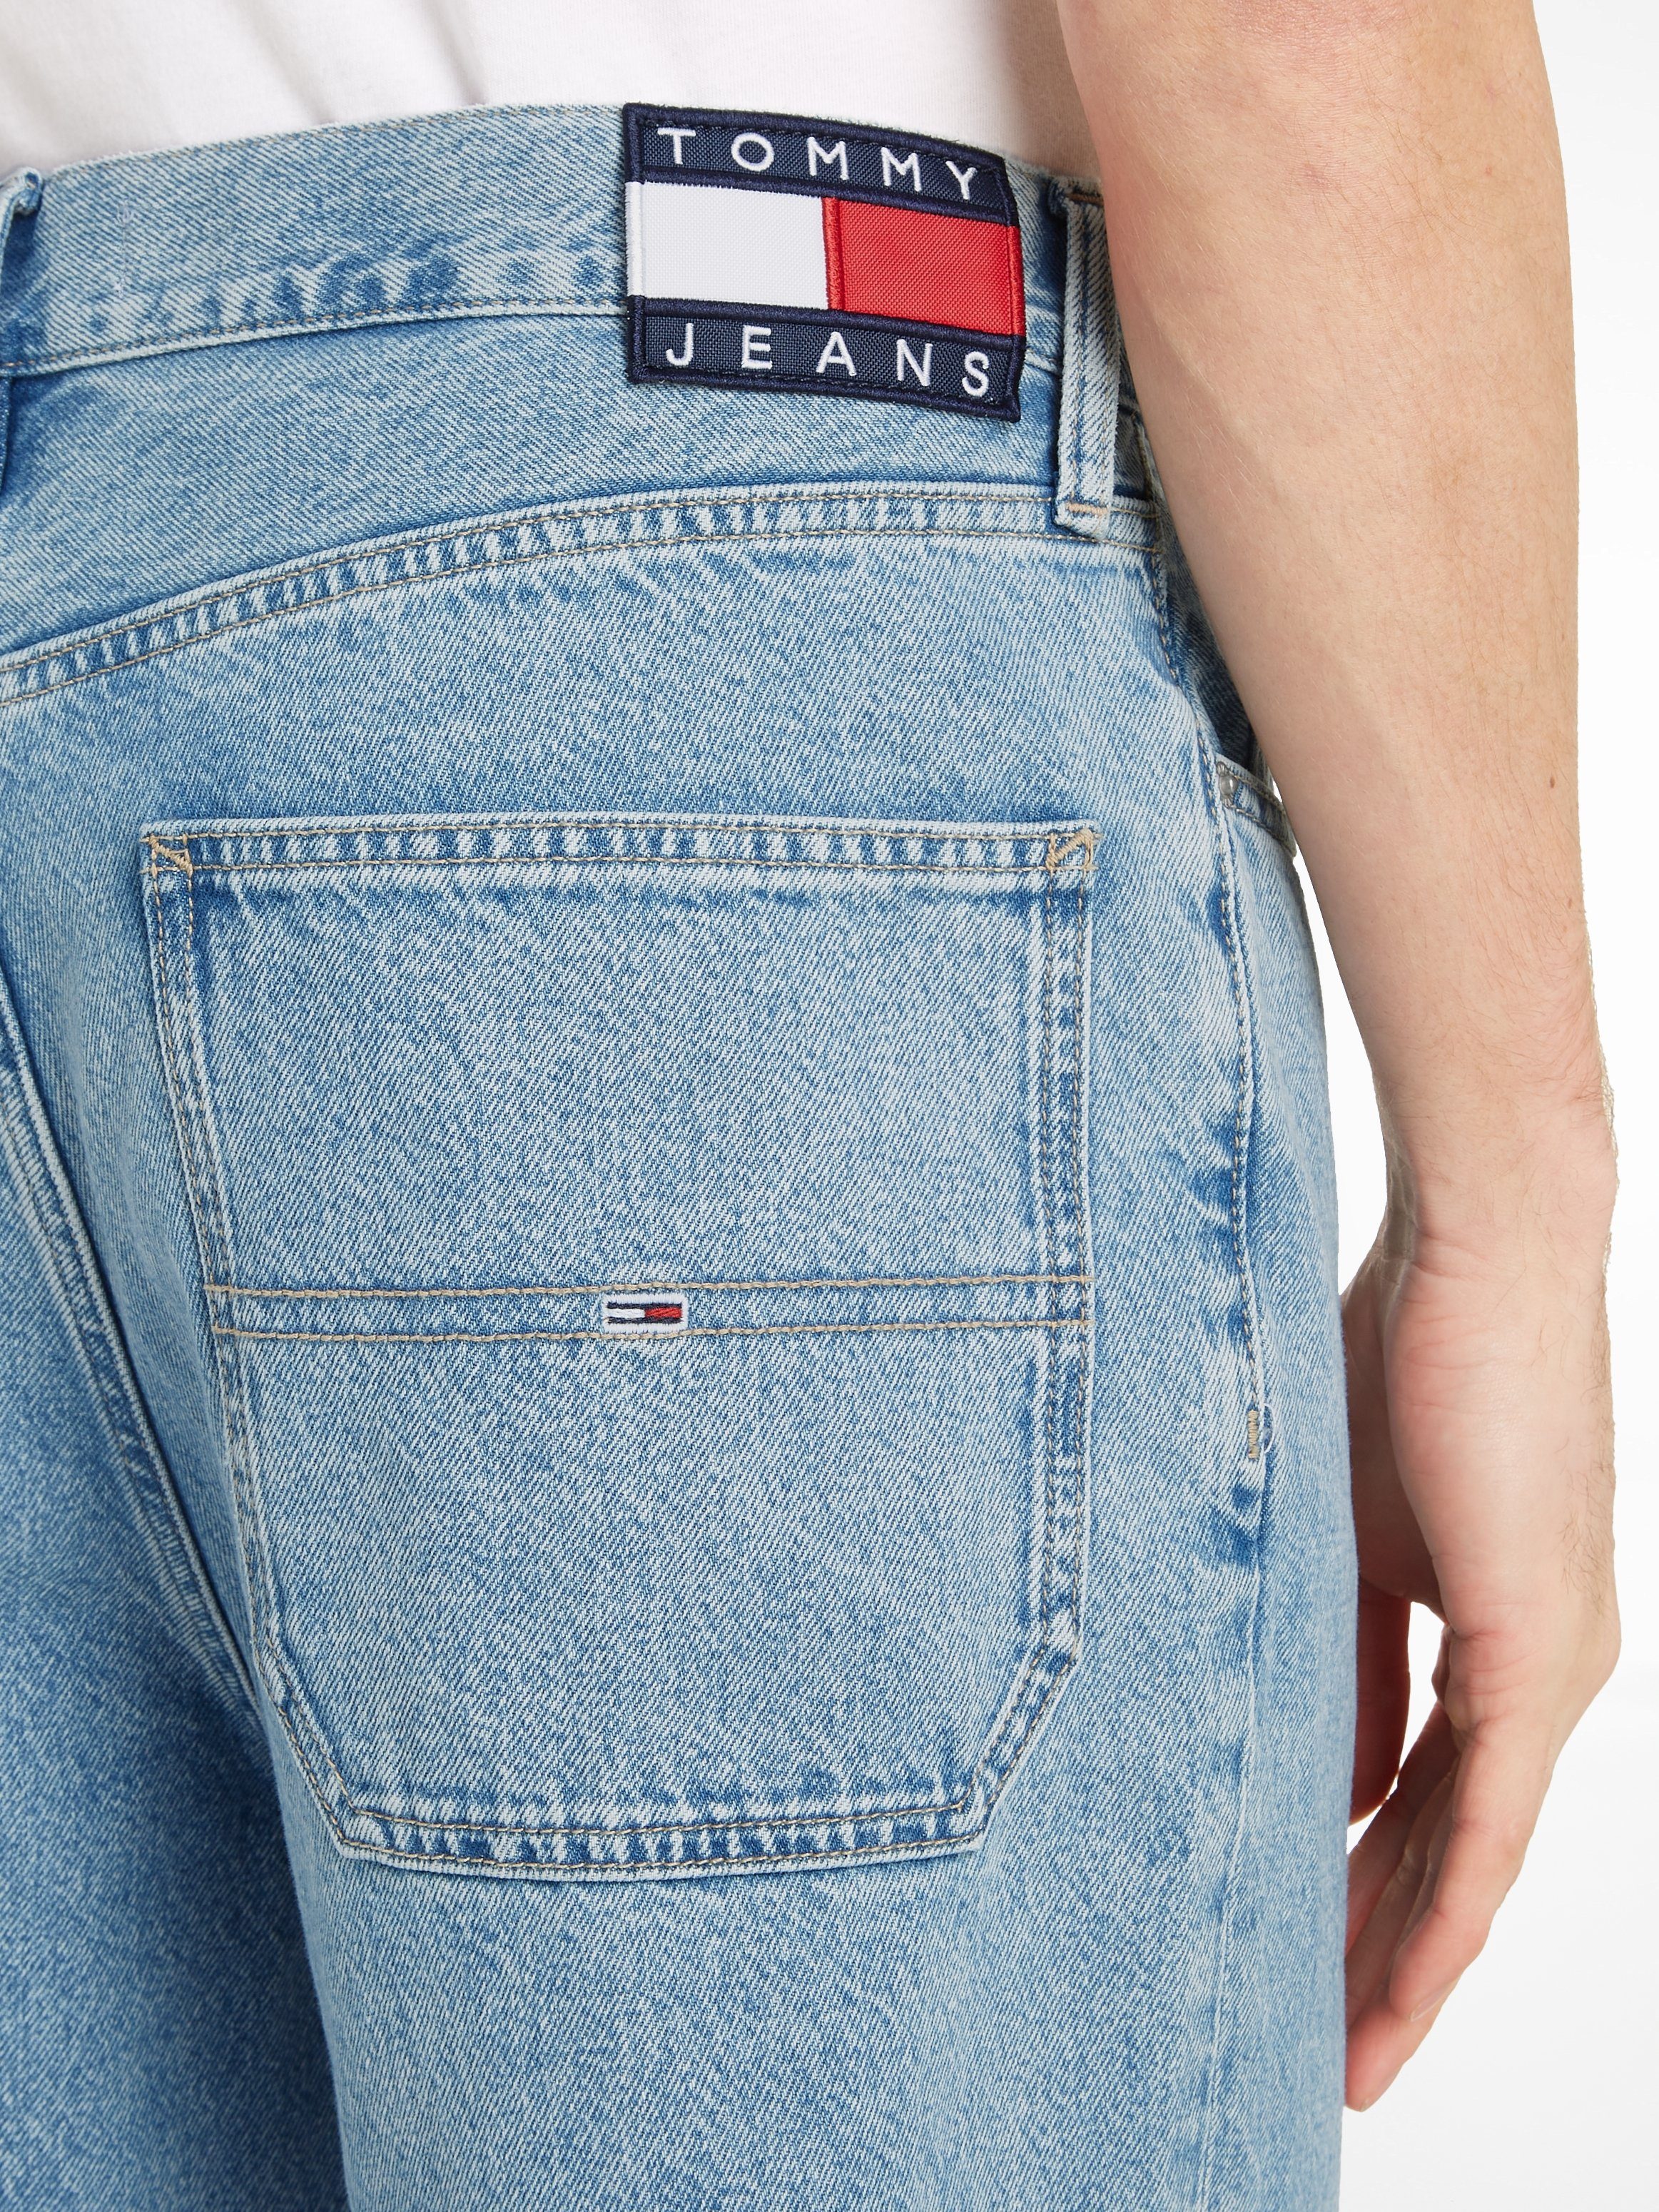 SKATER JEAN Jeans 5-Pocket-Jeans CG4014 Tommy